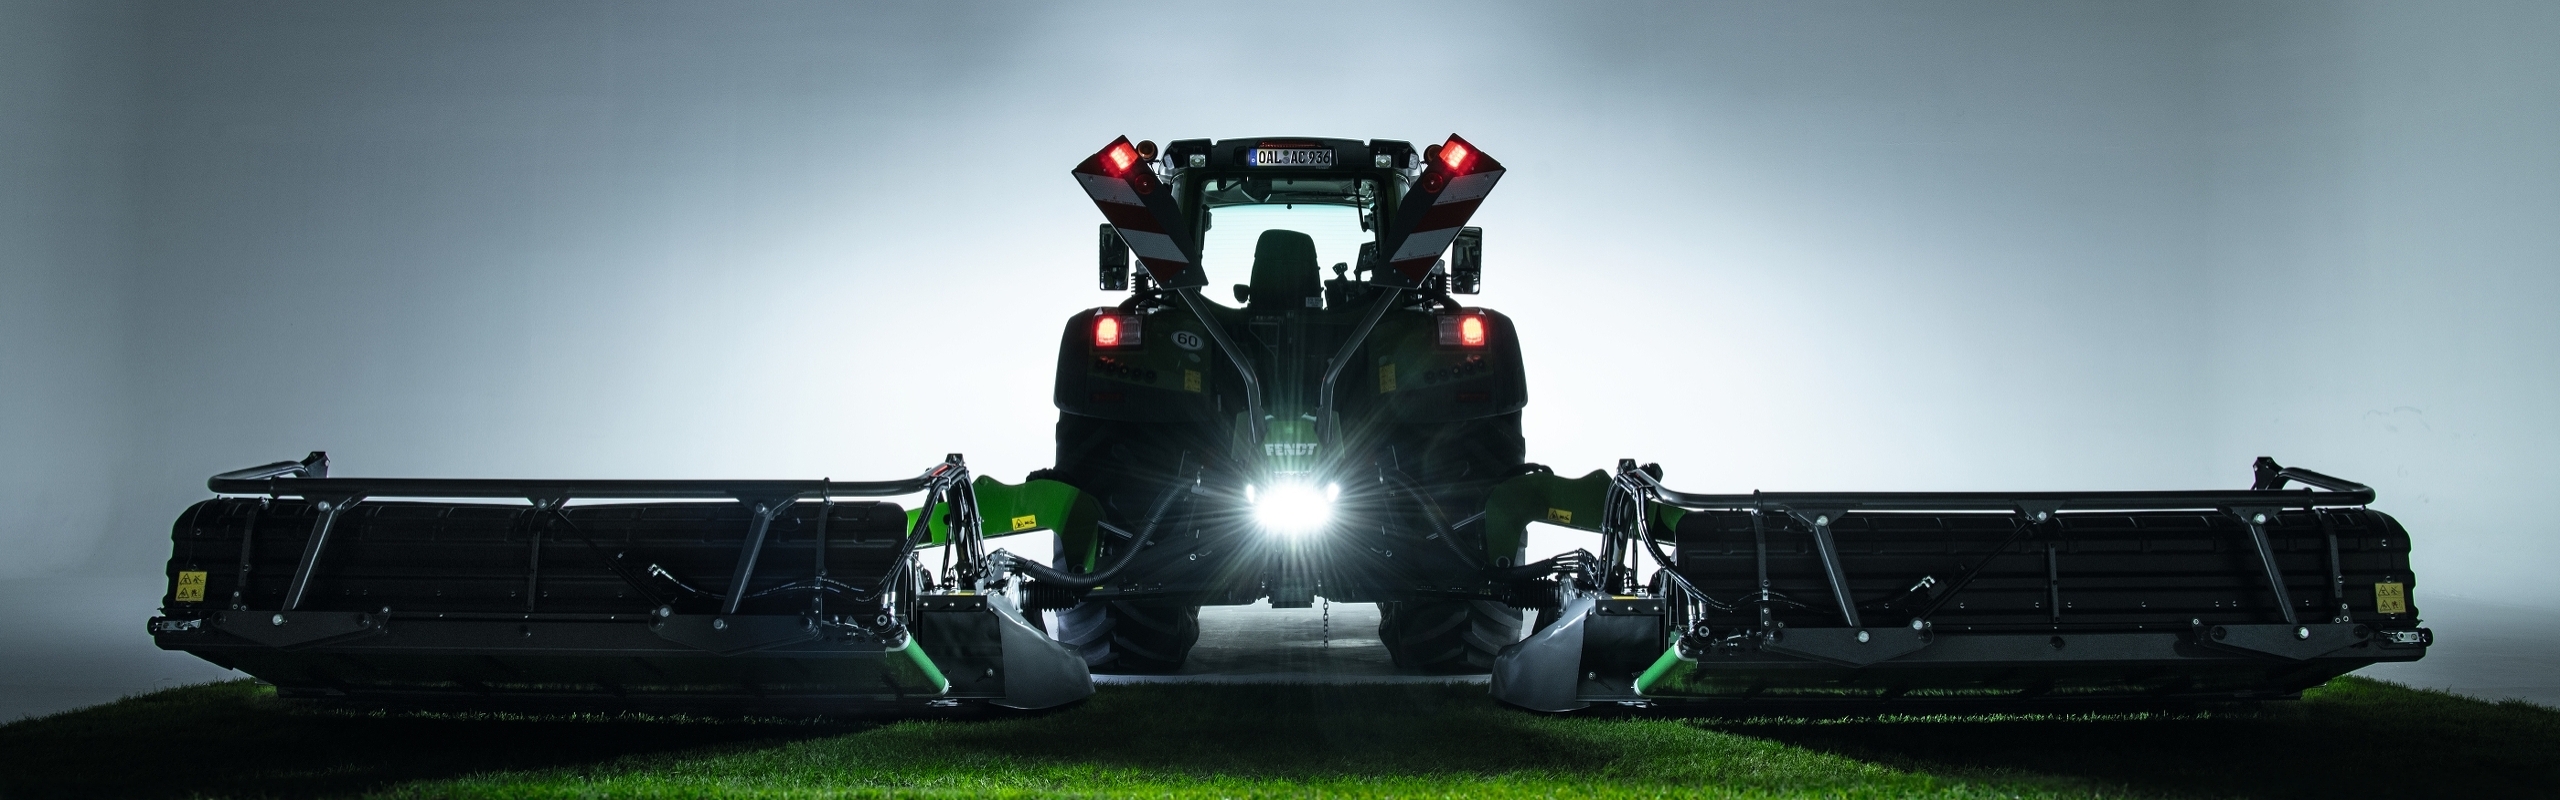 Een Fendt-tractor staat met een Fendt Slicer-schijvenmaaier in de avondschemering op een veld.